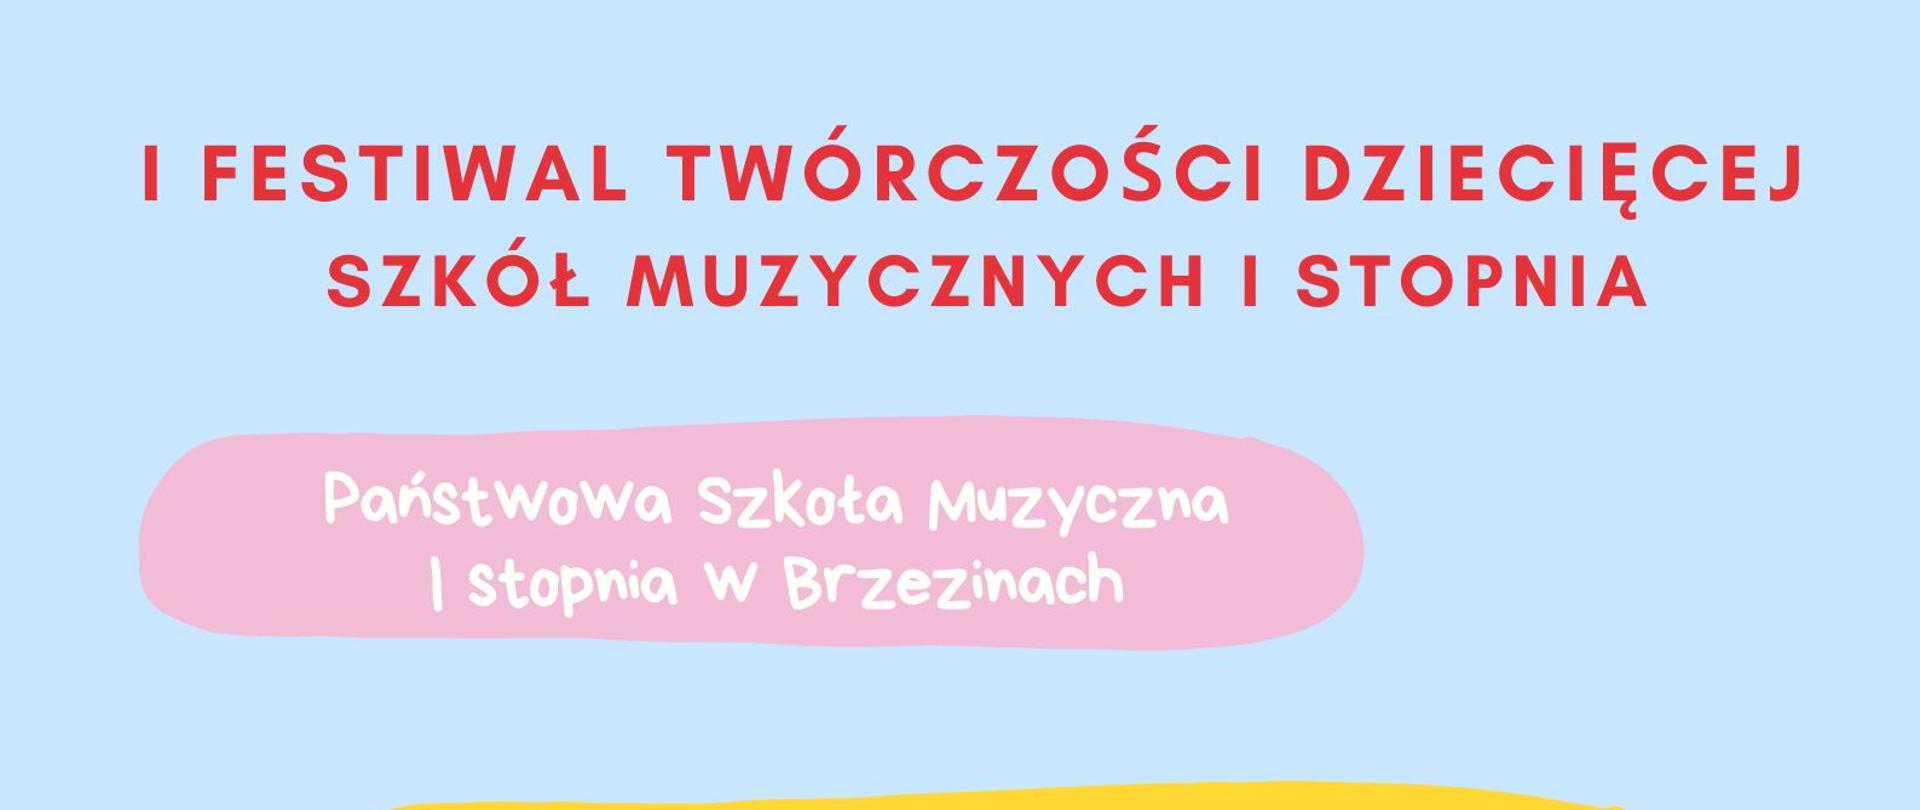 Plakat przedstawiający na niebieskim tle grających na instrumentach oraz informacje dotyczące I festiwalu twórczości dziecięcej w wykonaniu uczniów szkoły muzycznej w Brzezinach, Grodzisku Mazowieckim oraz Skierniewicach.